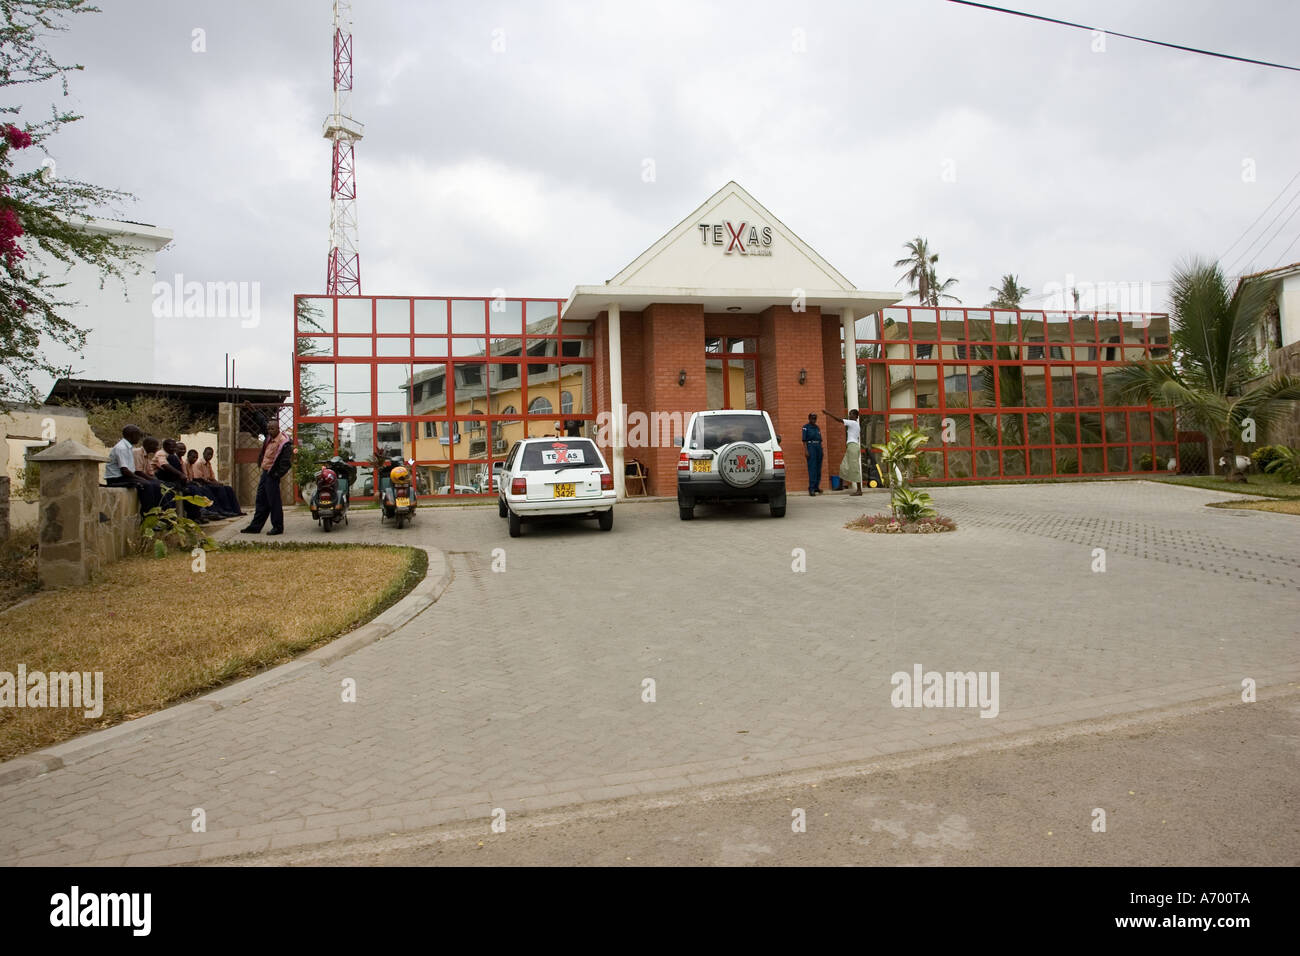 Les alarmes du Texas qui fournit de l'administration centrale des gardes de sécurité pour les propriétés de Mombasa Kenya Afrique de l'Est Banque D'Images